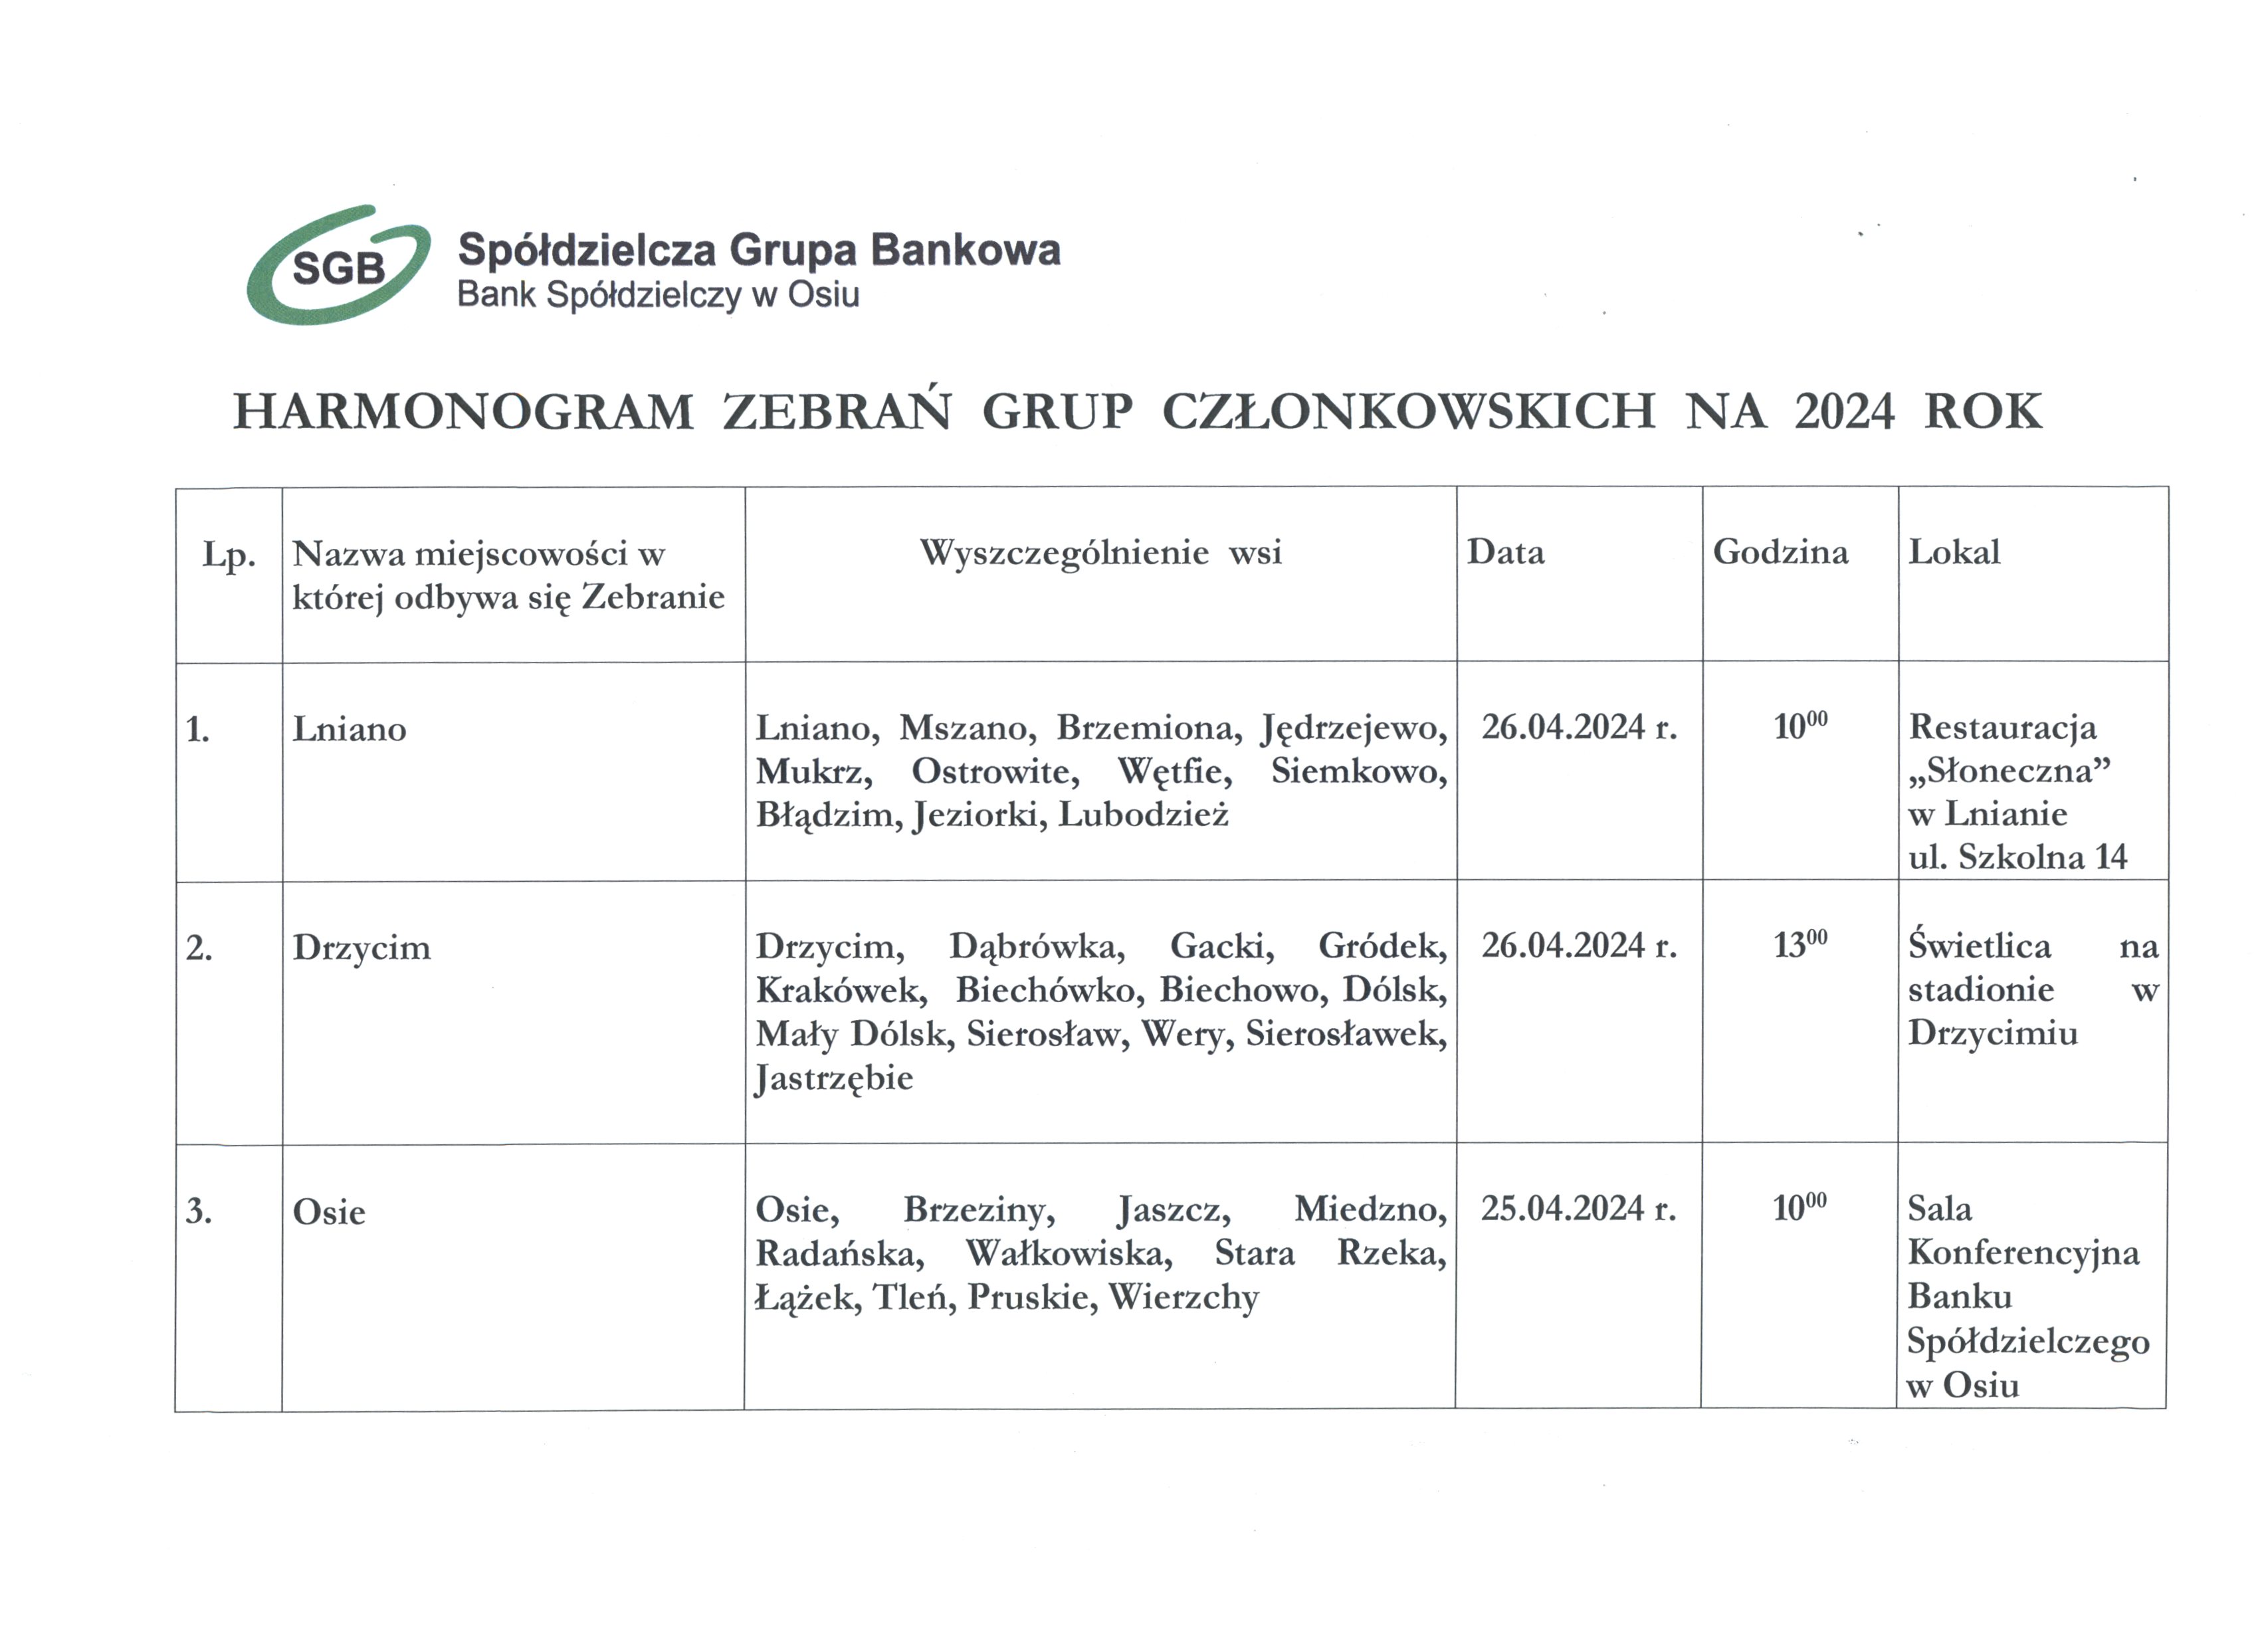 Harmonogram zebrań Grup Członkowskich Banku Spółdzielczego w Osiu w 2024 roku